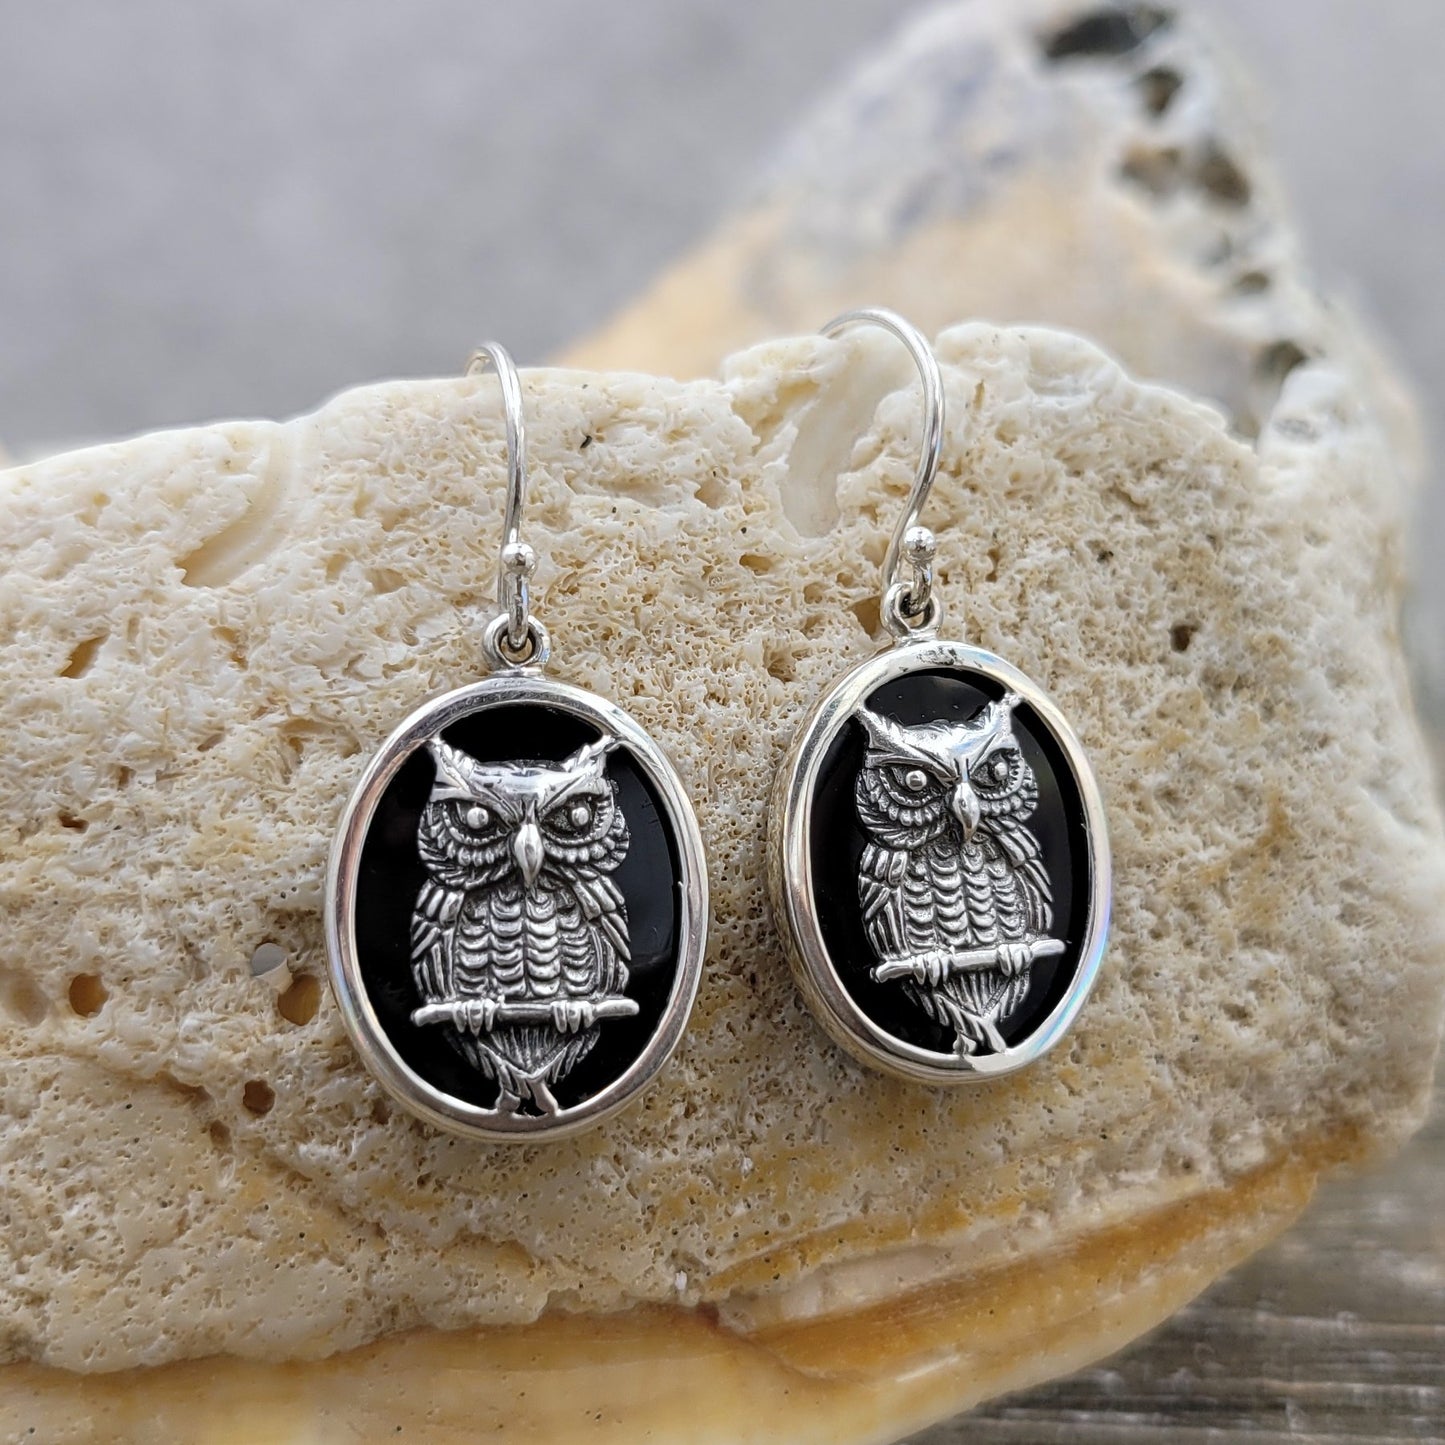 BESHEEK Sterling Silver and Onyx Wise Owl Oval Drop Earrings | Handmade Hypoallergenic Boho Beach Gala Wedding Style Sterling Earrings